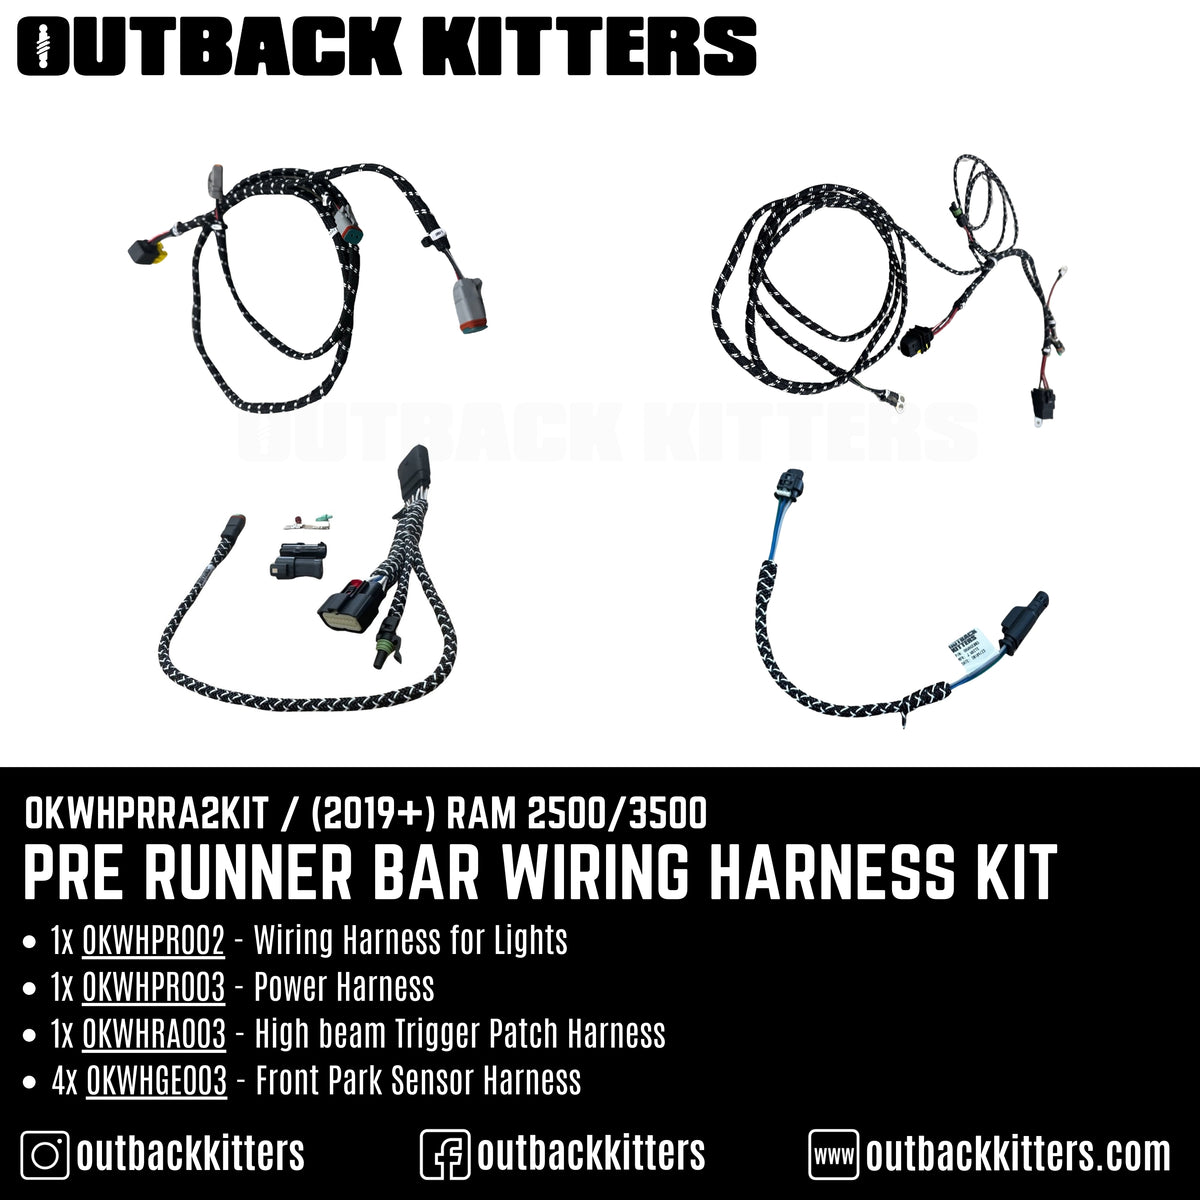 Pre Runner Bar Wiring Harness Kit for 2019+ RAM 2500/3500